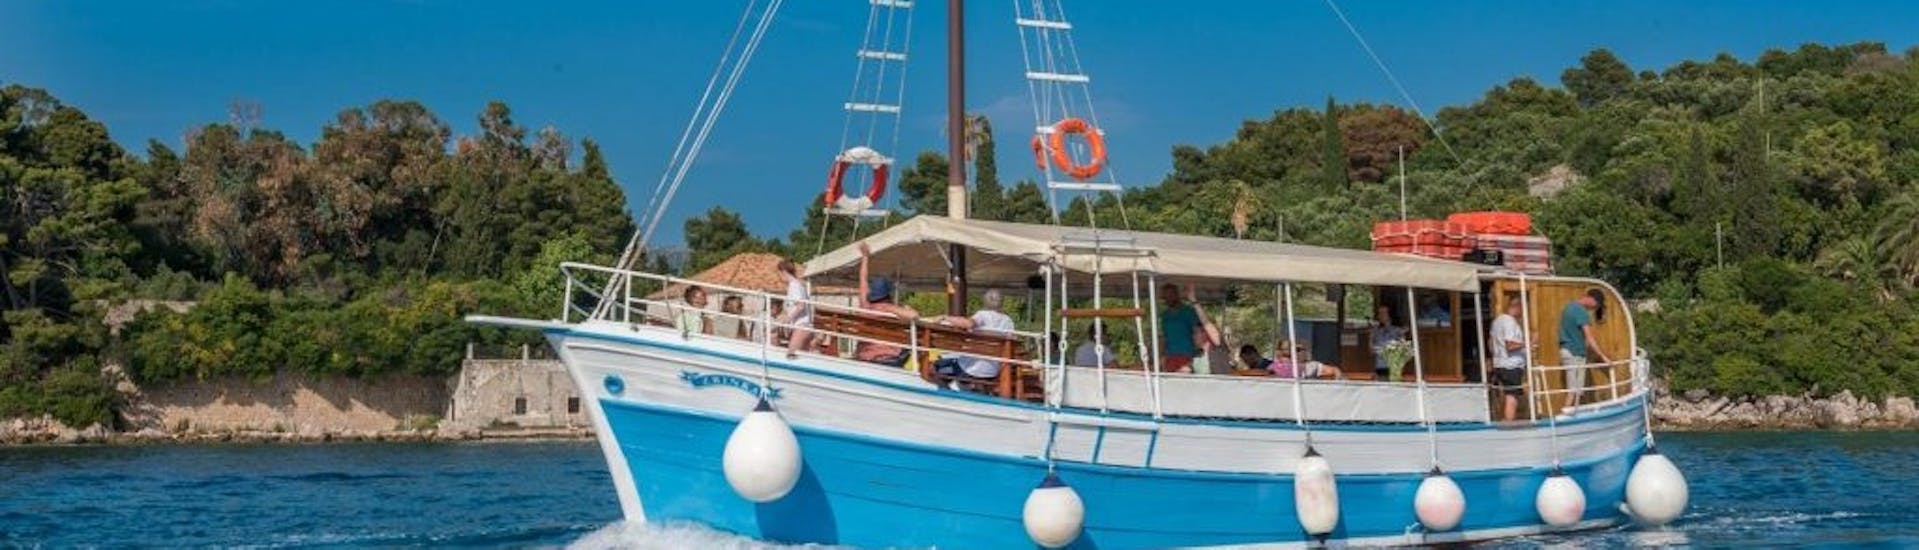 Imagen del barco de Dubrovnik Islands Tours durante el viaje en barco a las islas Elaphiti, desde Dubrovnik.